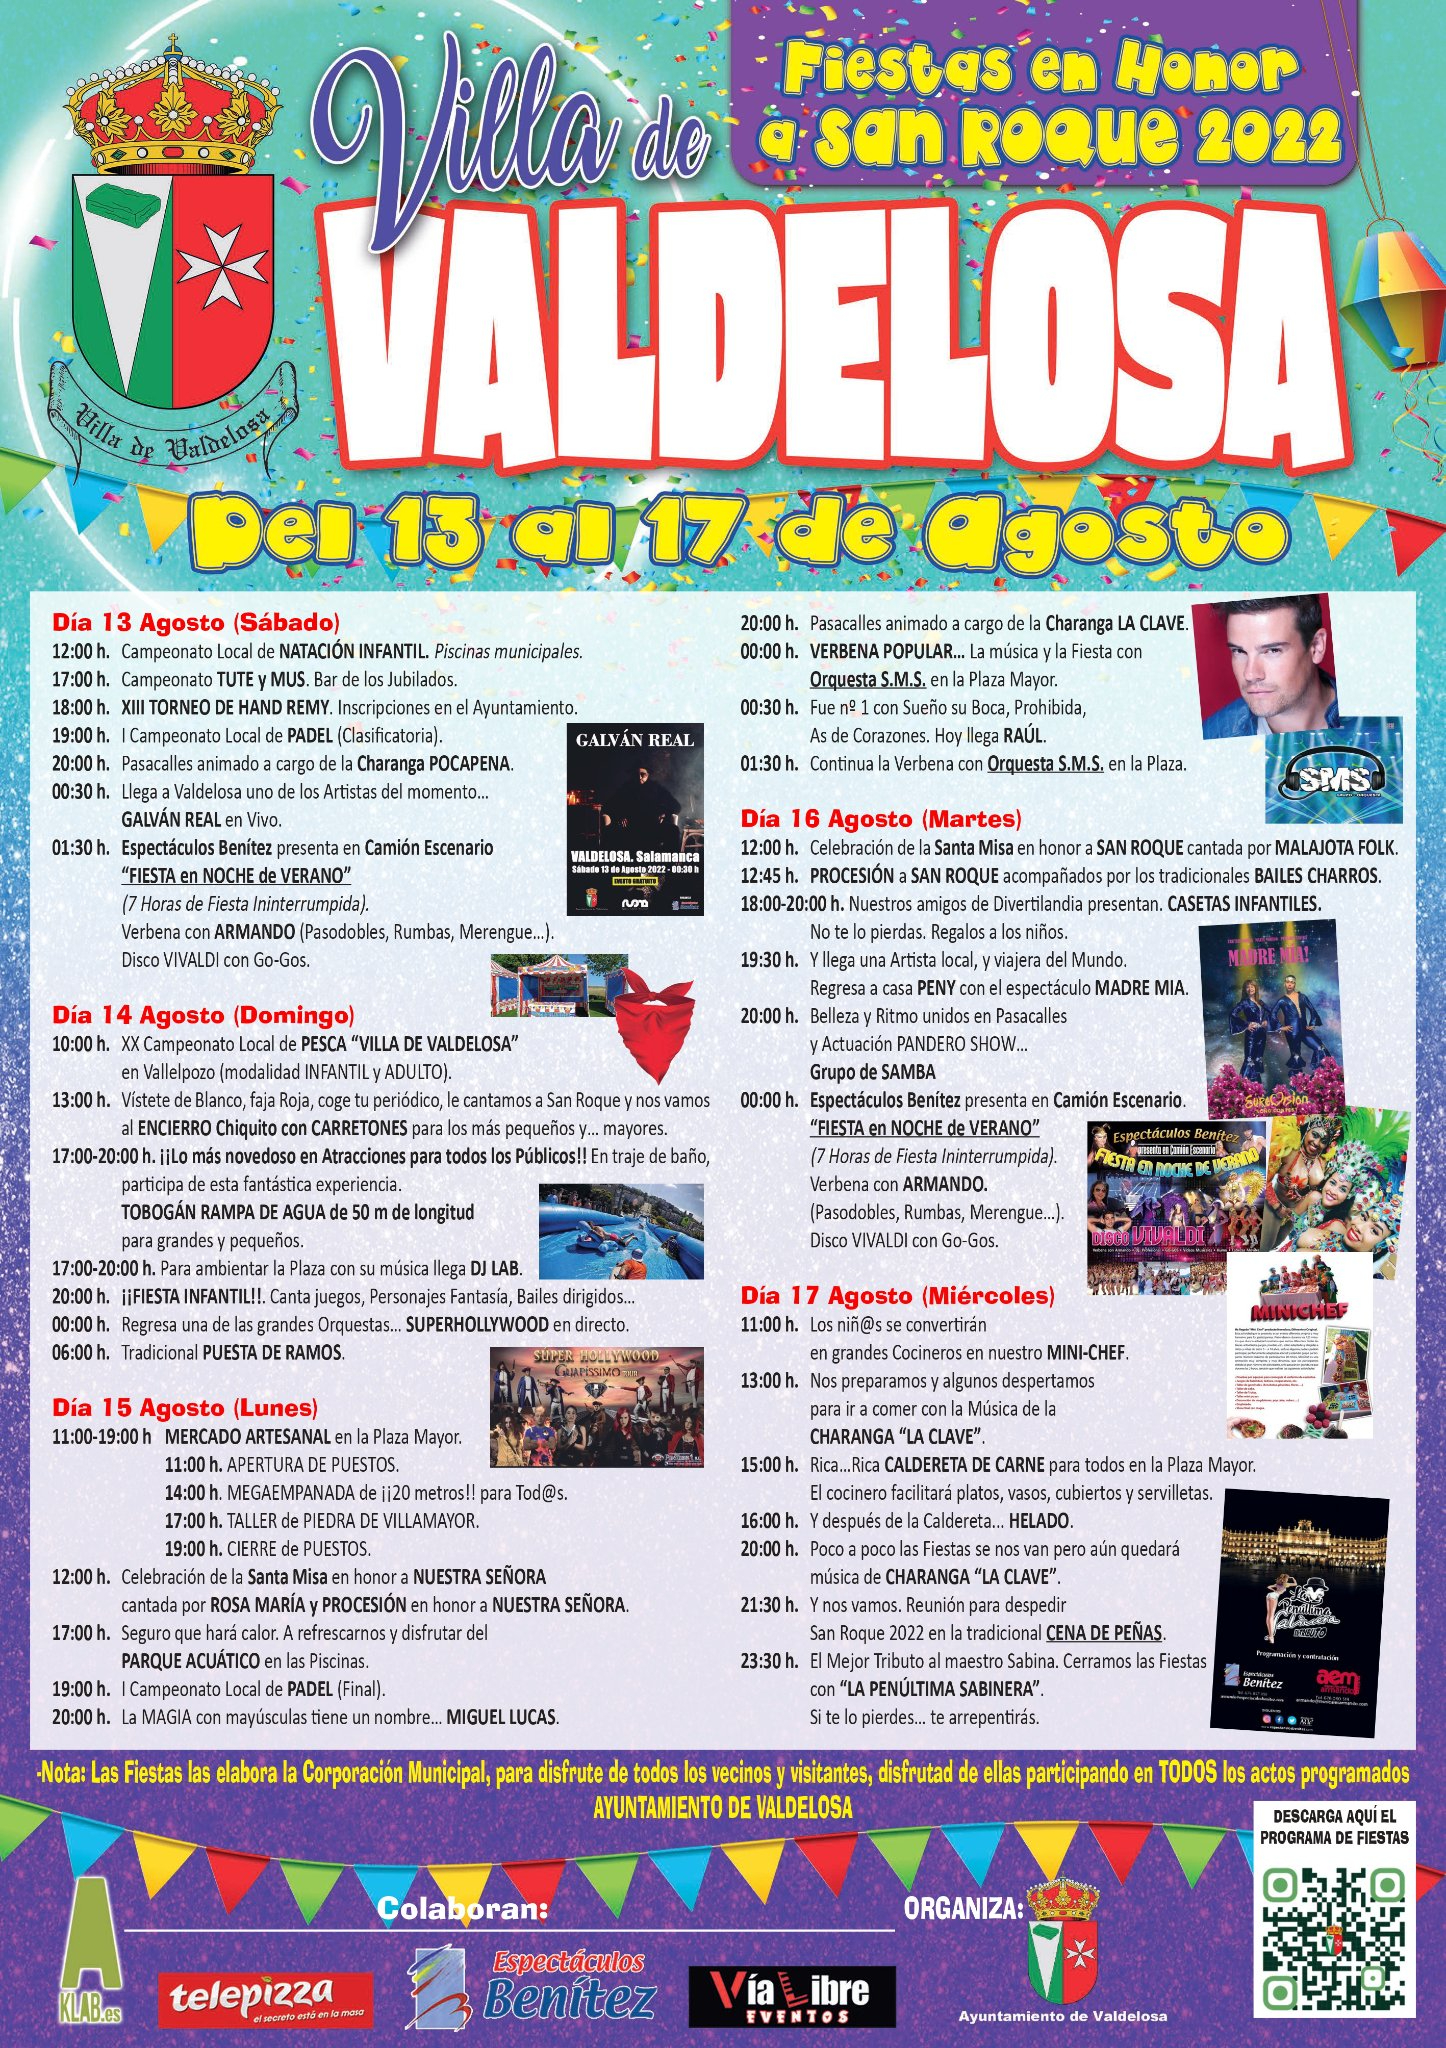 Foto 2 - Conciertos gratuitos y actividades para niños, el punto fuerte de las fiestas de Valdelosa